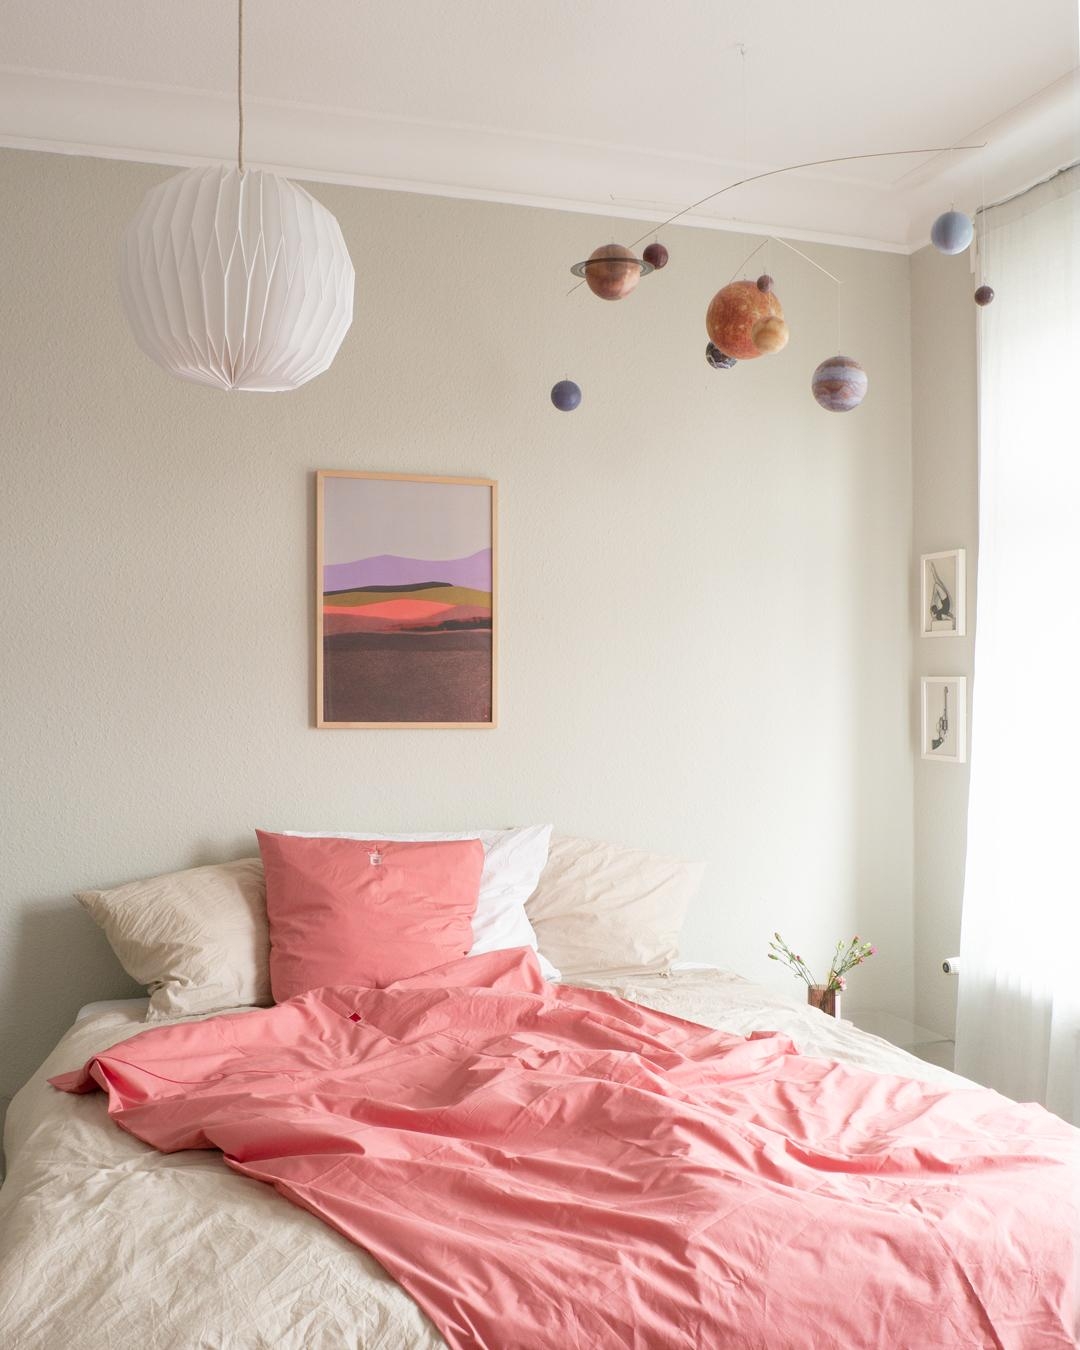 Kleines Schlafzimmer Make-Over, neues Bild - neues Gefühl! Mit Koralle gegen die graue Eintönigkeit.